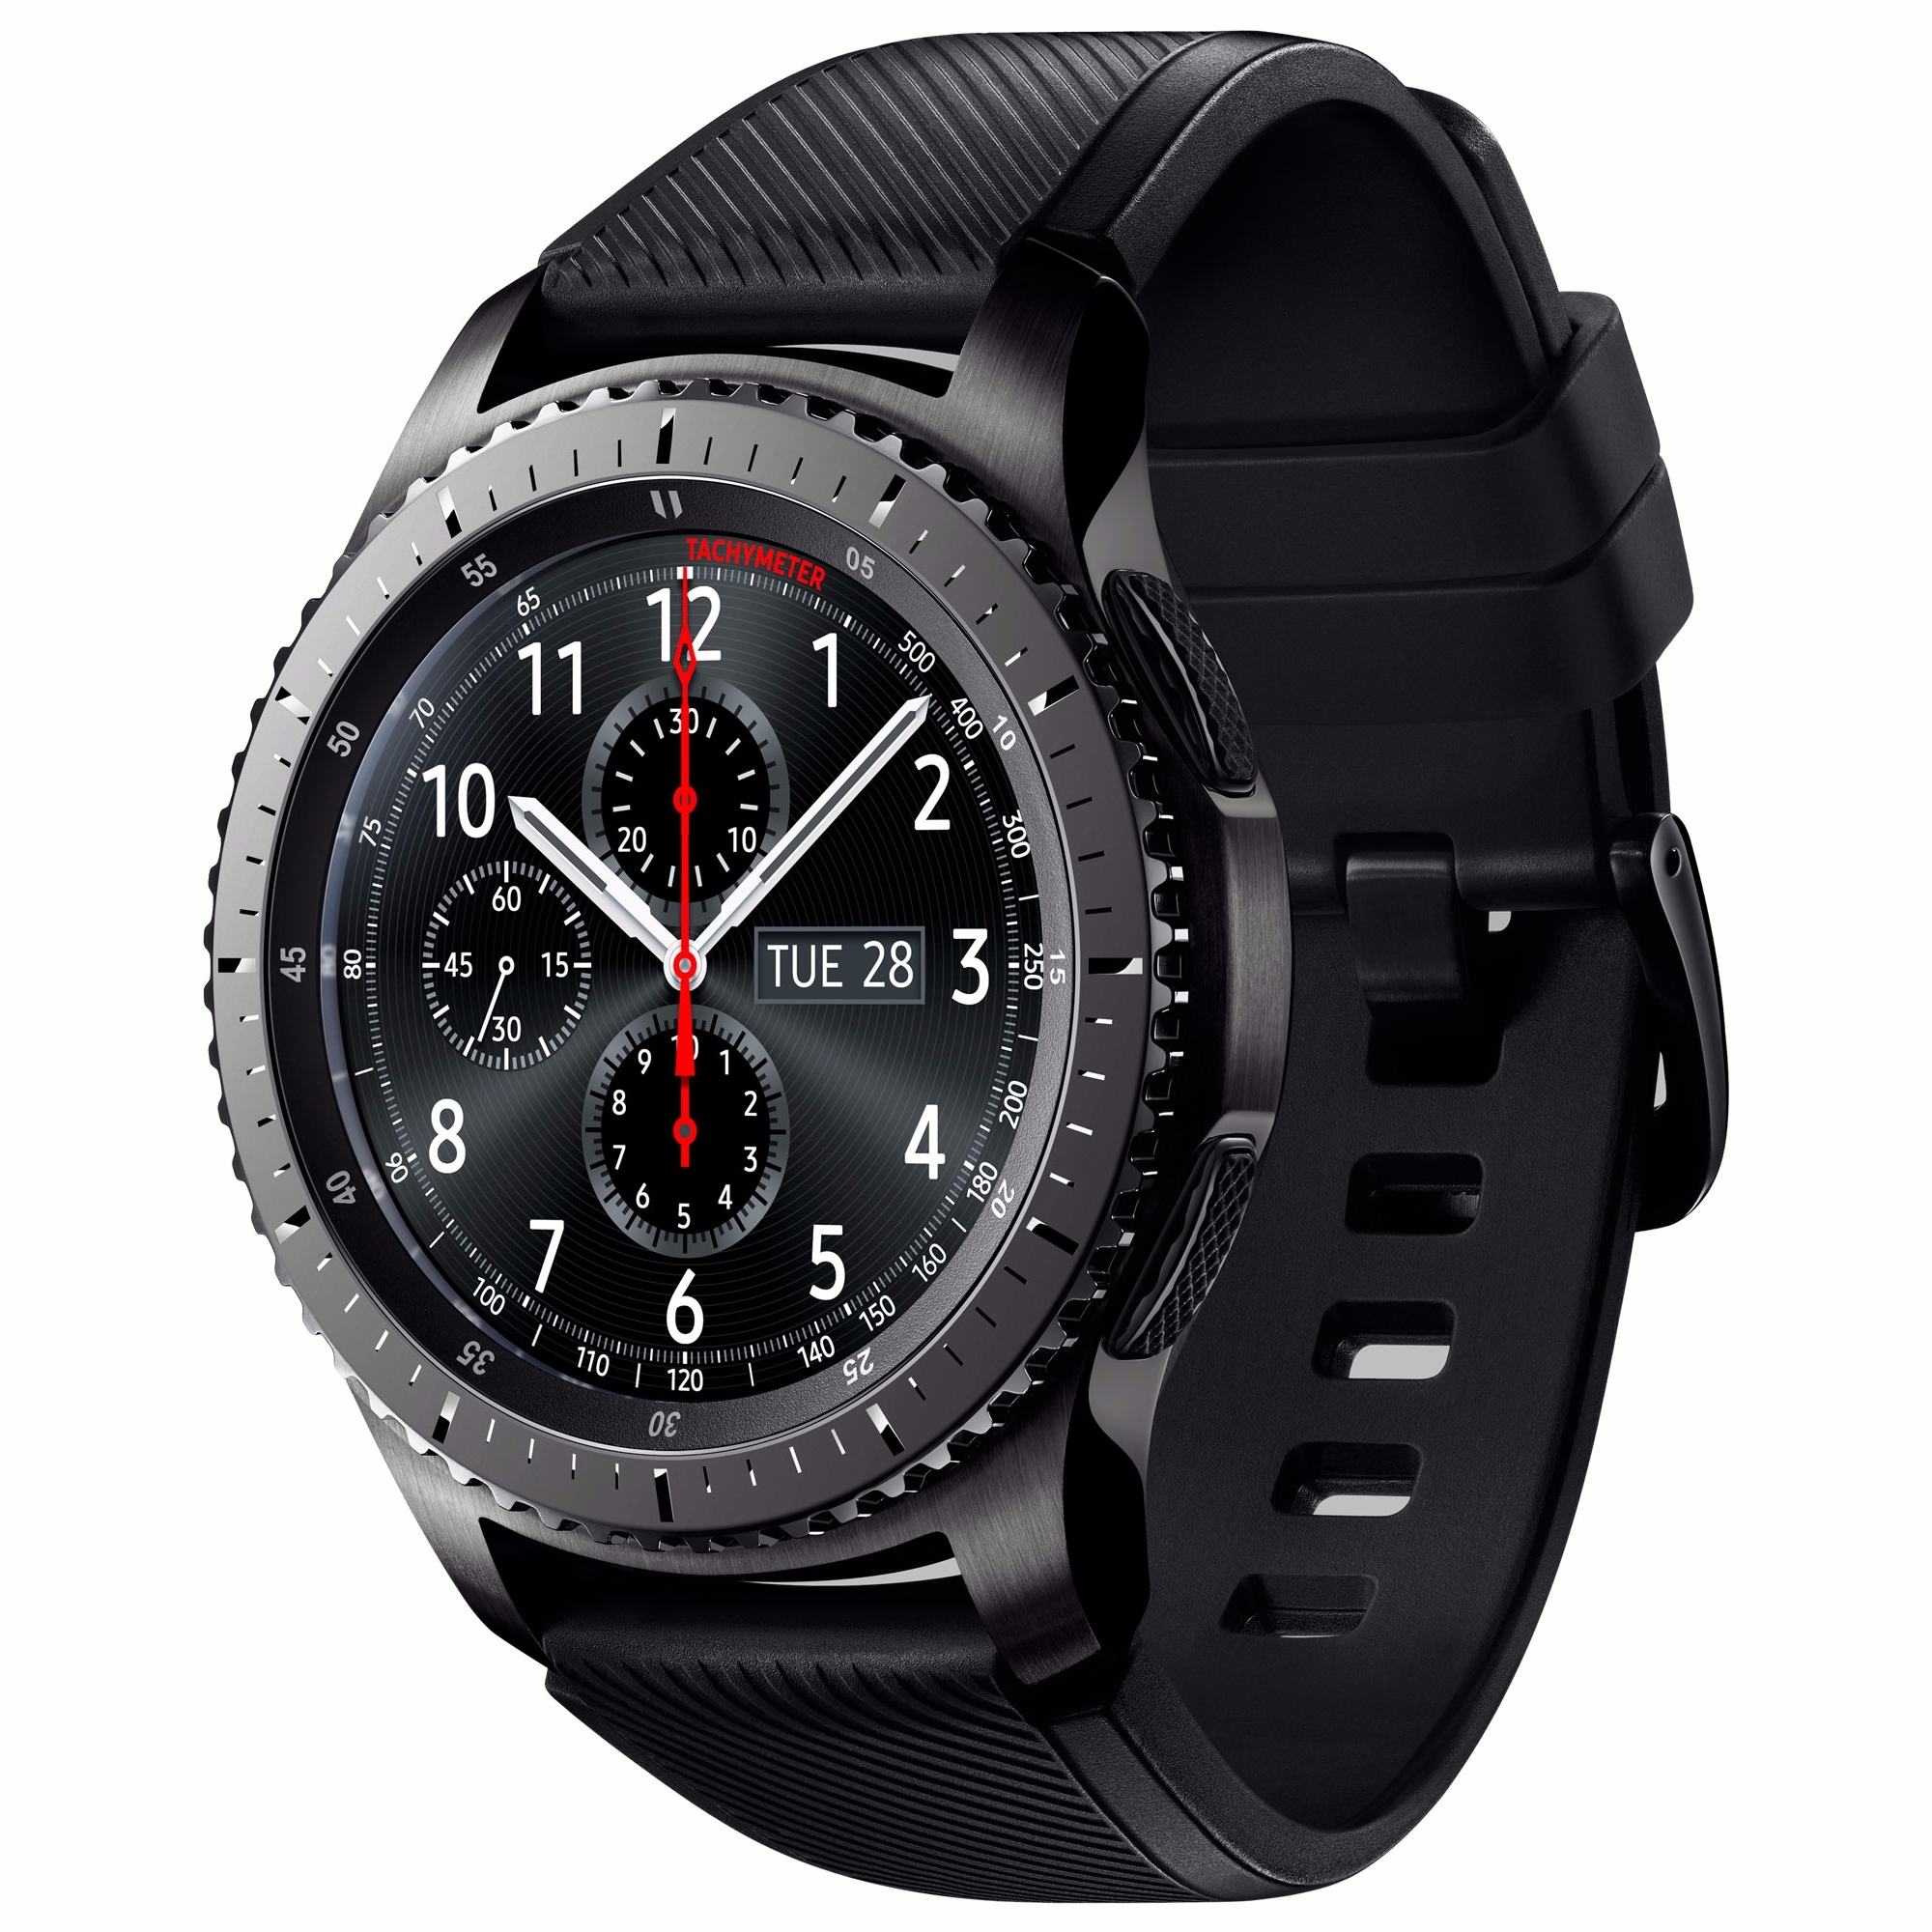 地表最強智慧腕錶Gear S3 12月正式登台